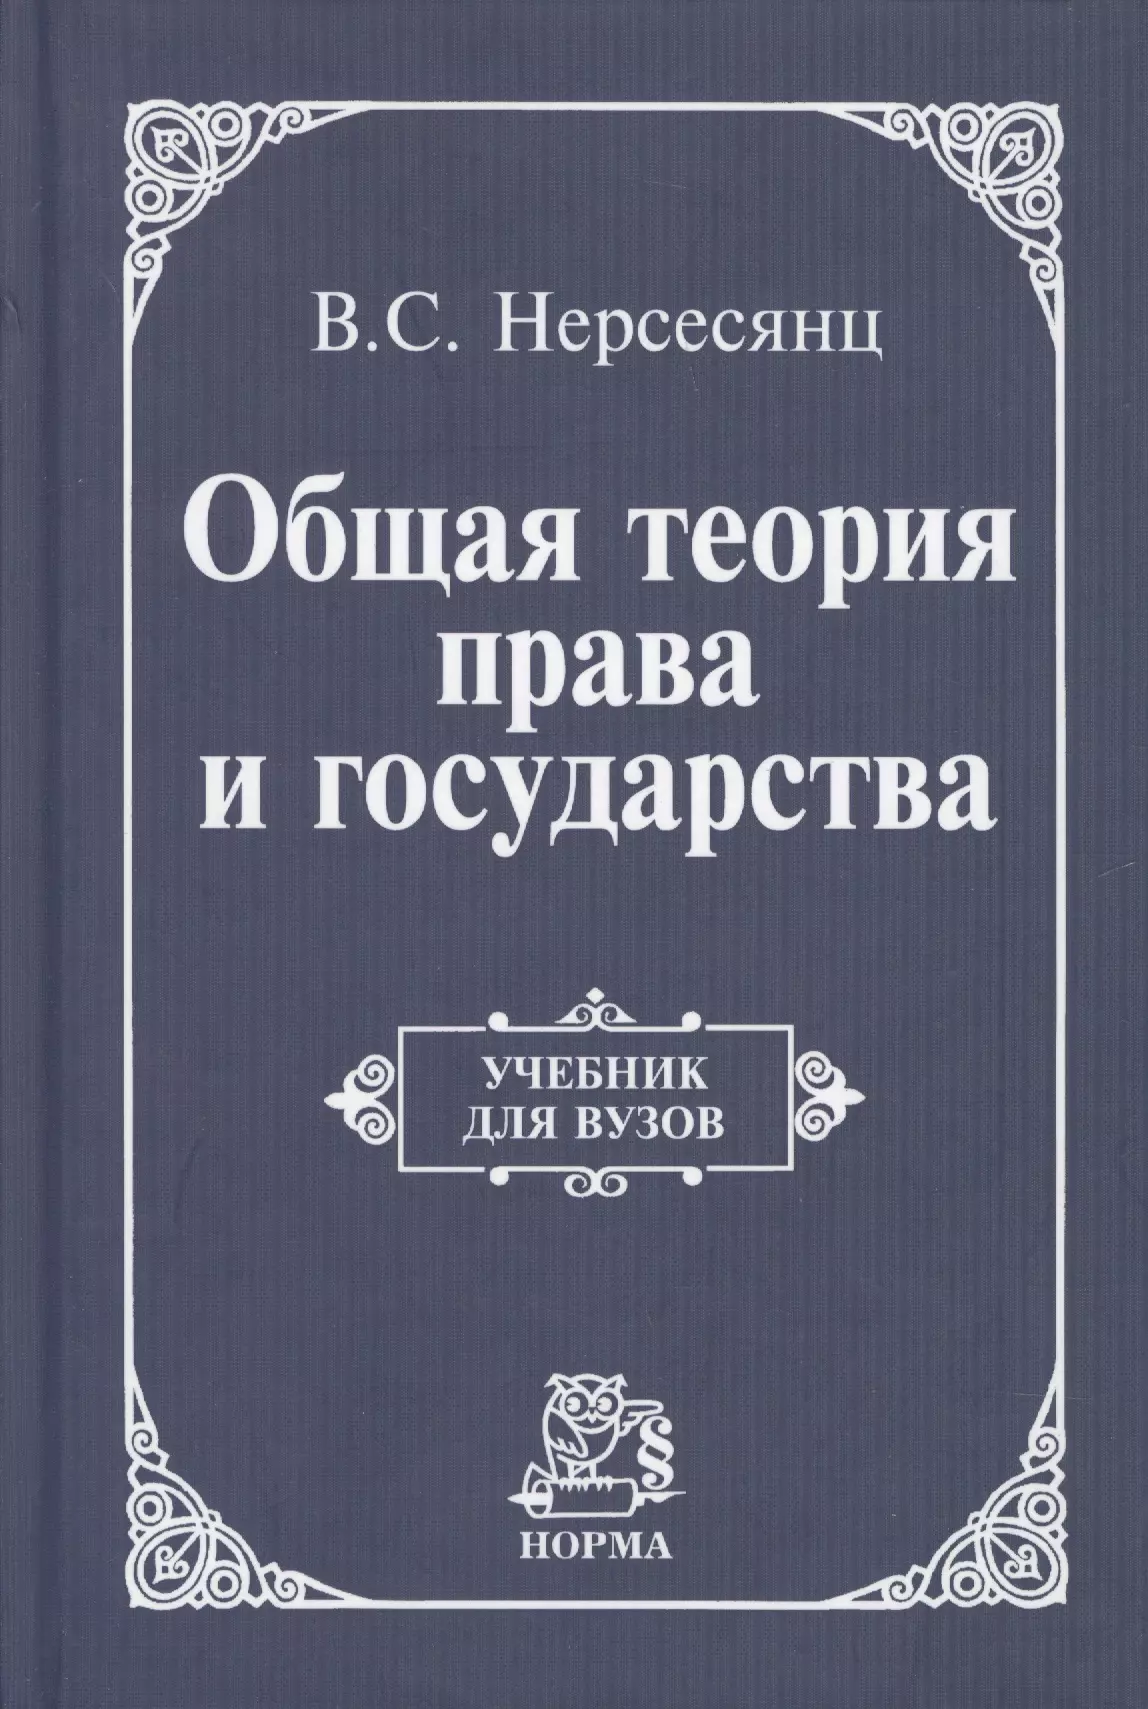 Нерсесянц Владик Сумбатович - Общая теория права и государства: Учебник для вузов